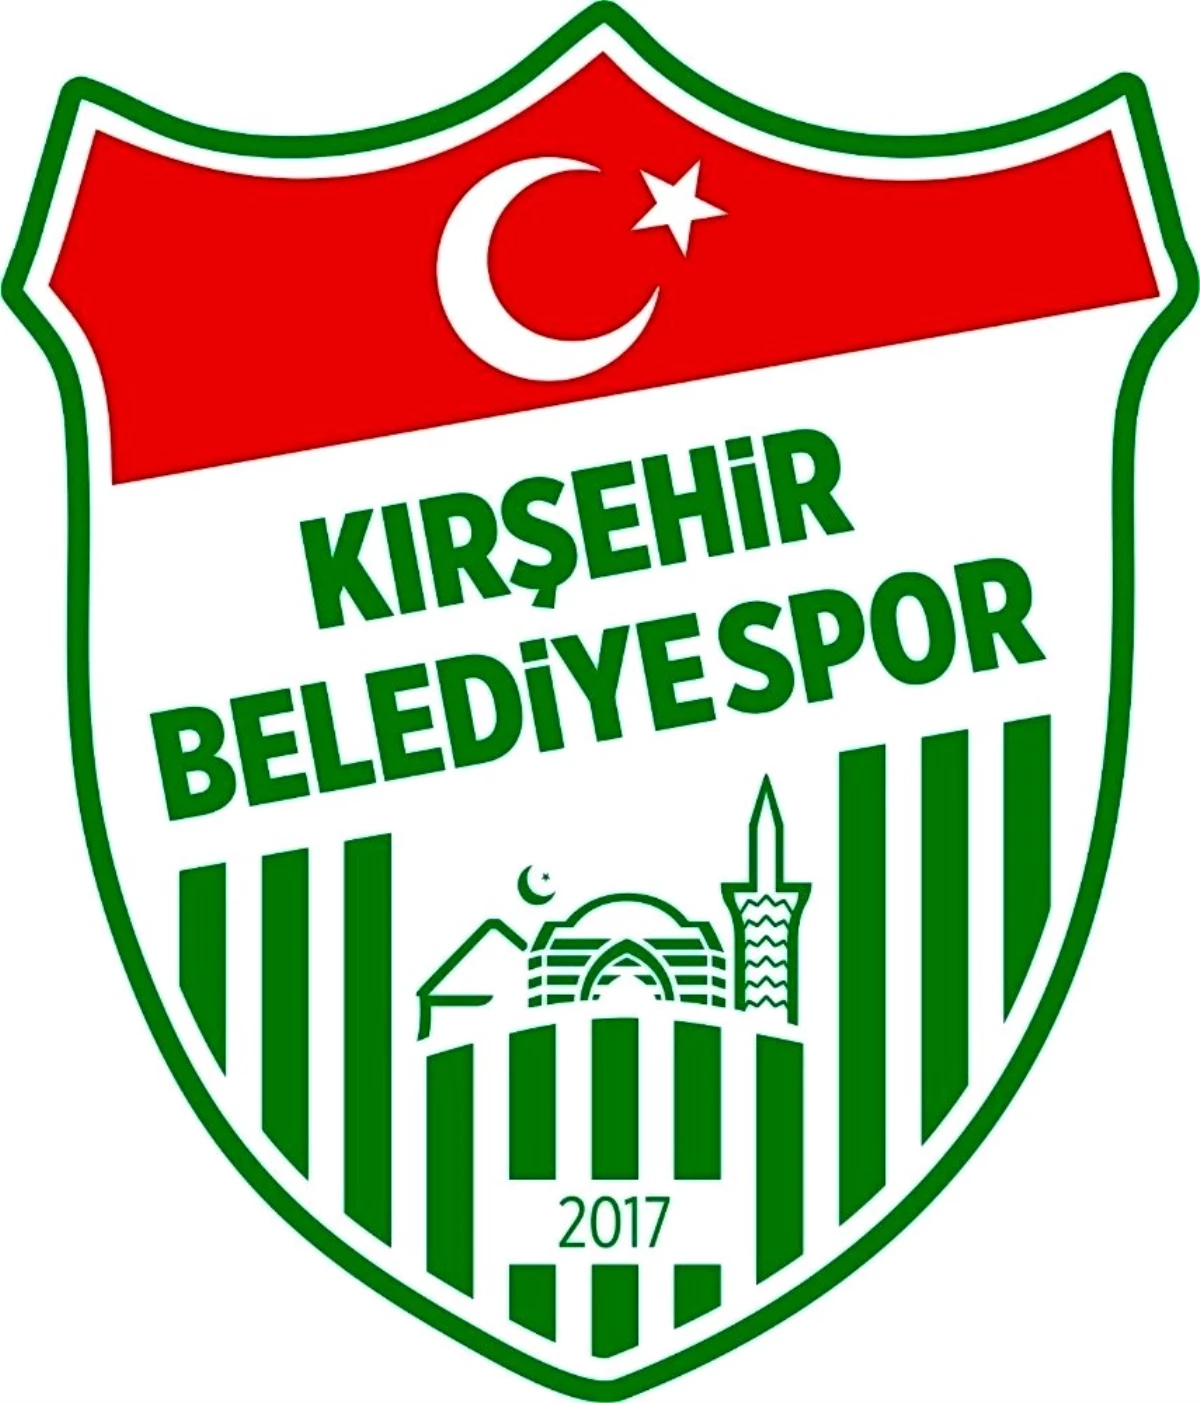 Son dakika! Kırşehir Belediyespor maçına TFF erteleme kararı verdi